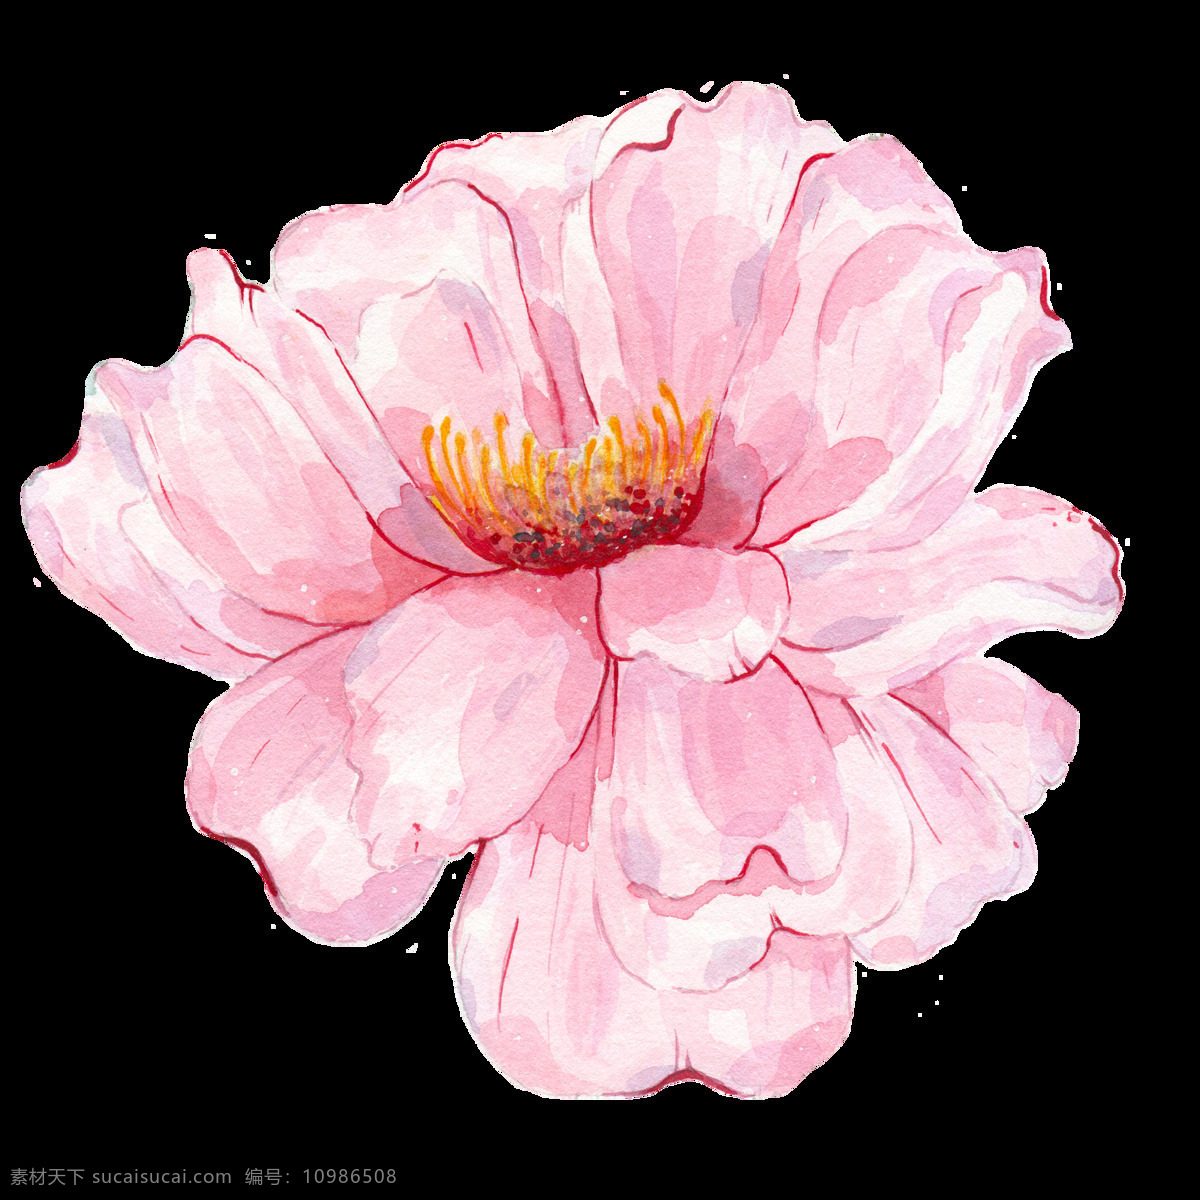 半透明 粉红色 花卉 免扣素材 水彩 唯美 装饰图案 晶莹剔透 花 透明 透蜜素材